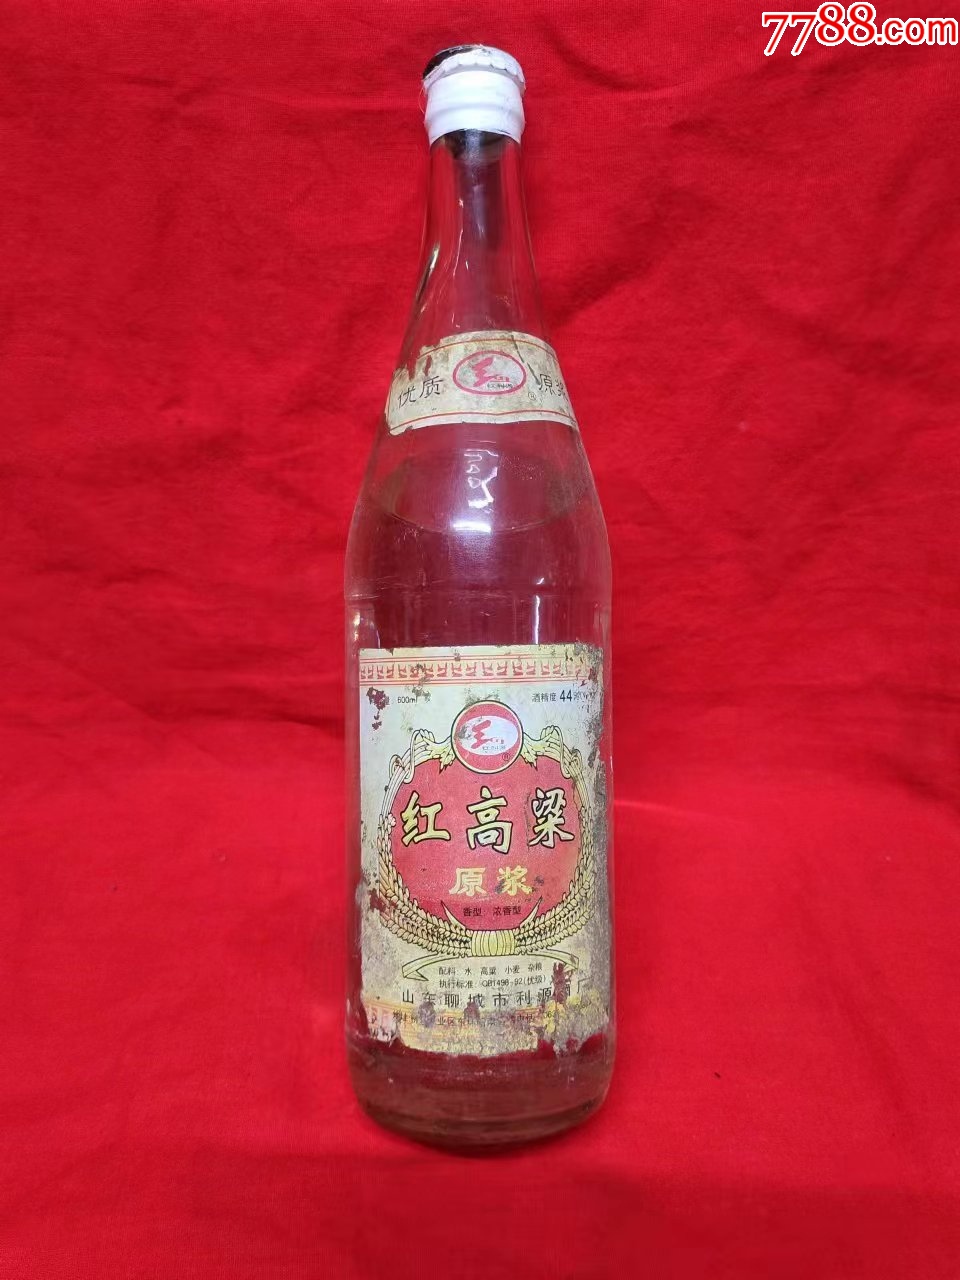 红高粱酒2004年图片